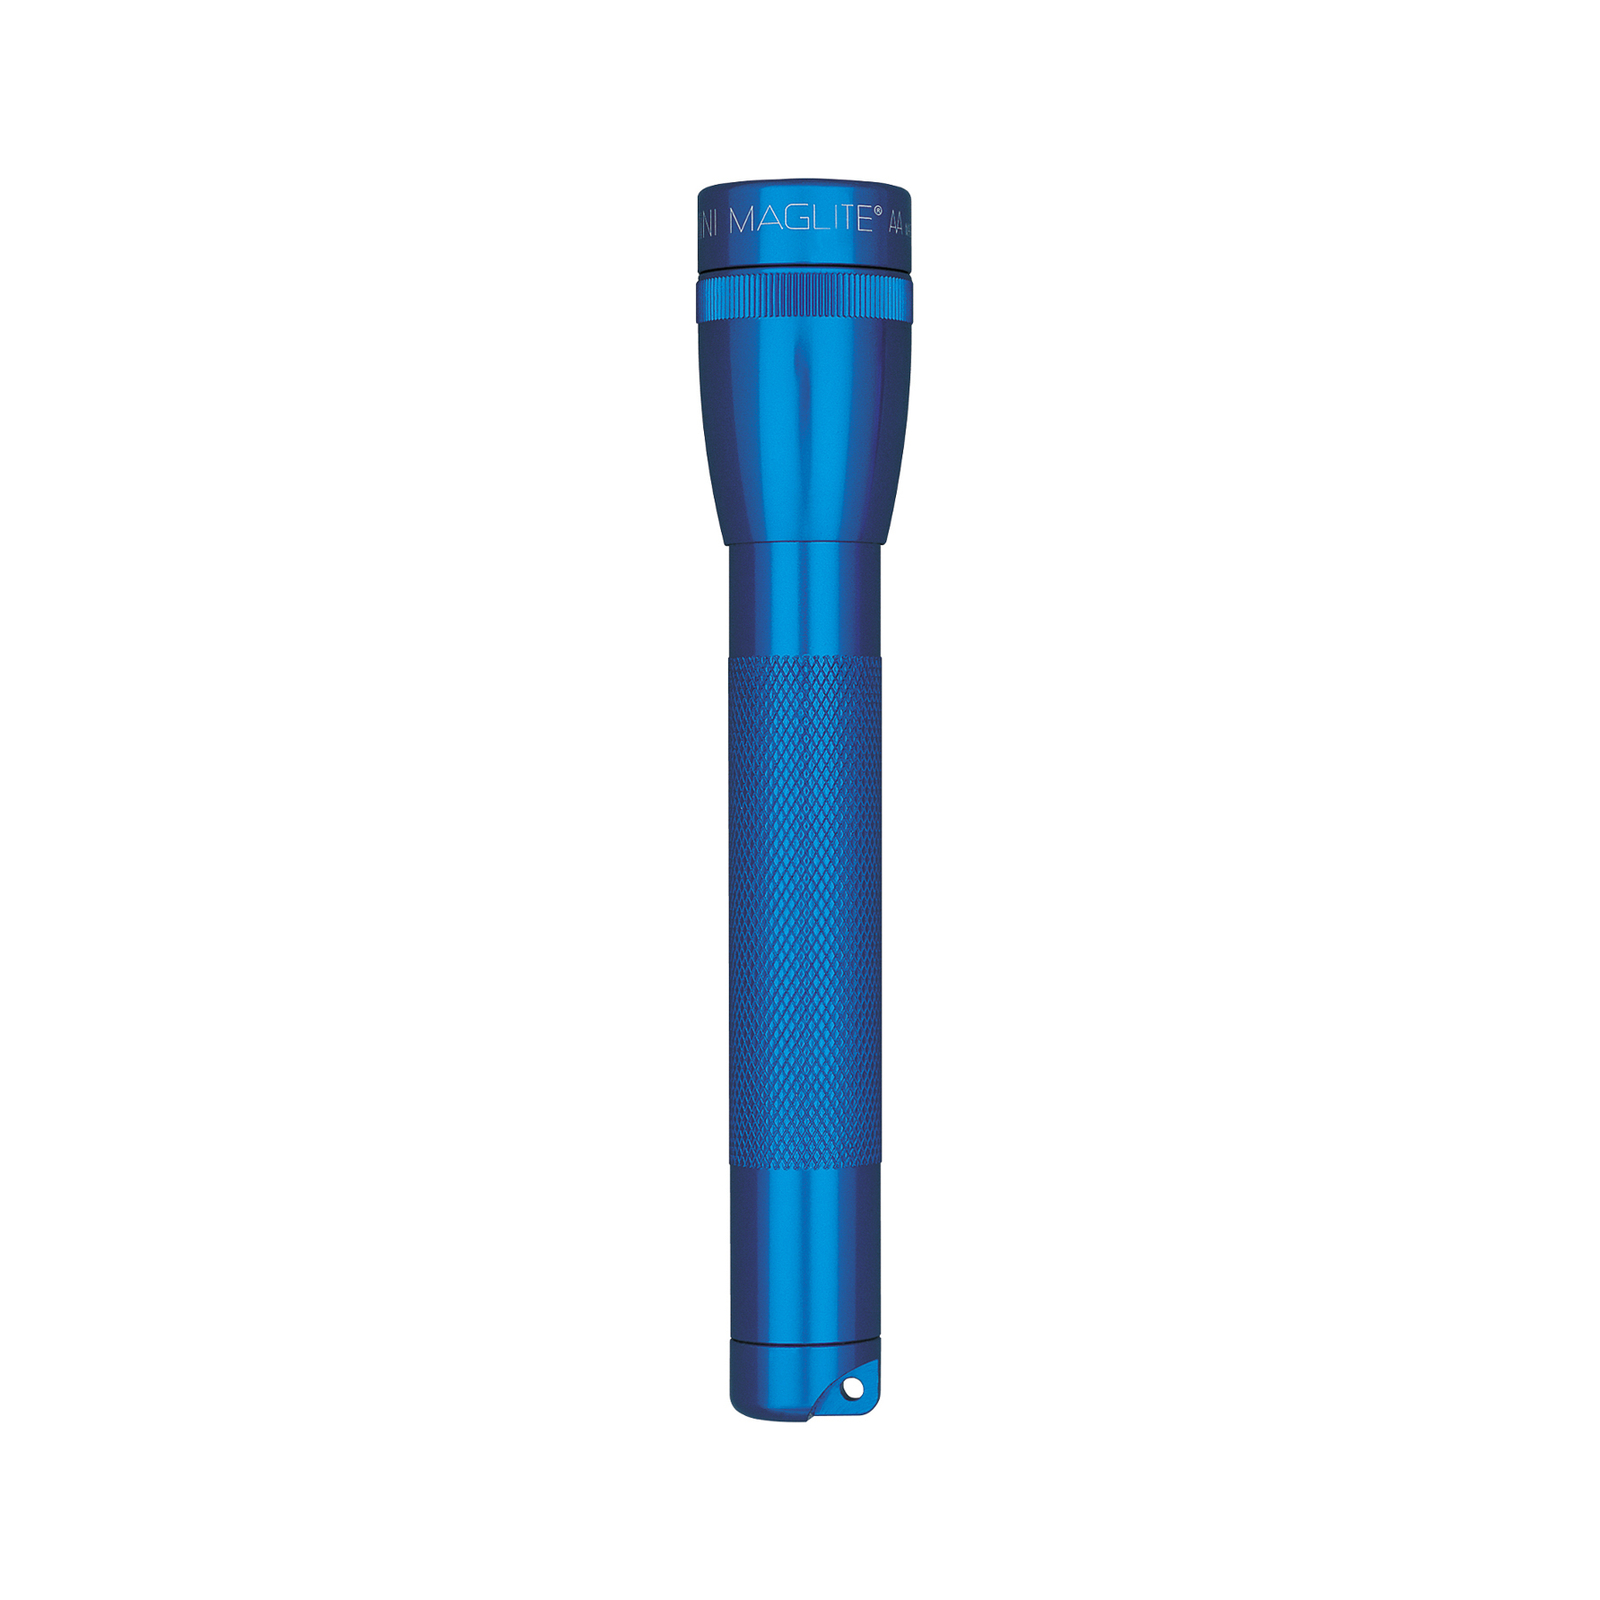 Maglite Xenon-Taschenlampe Mini, 2-Cell AA, blau